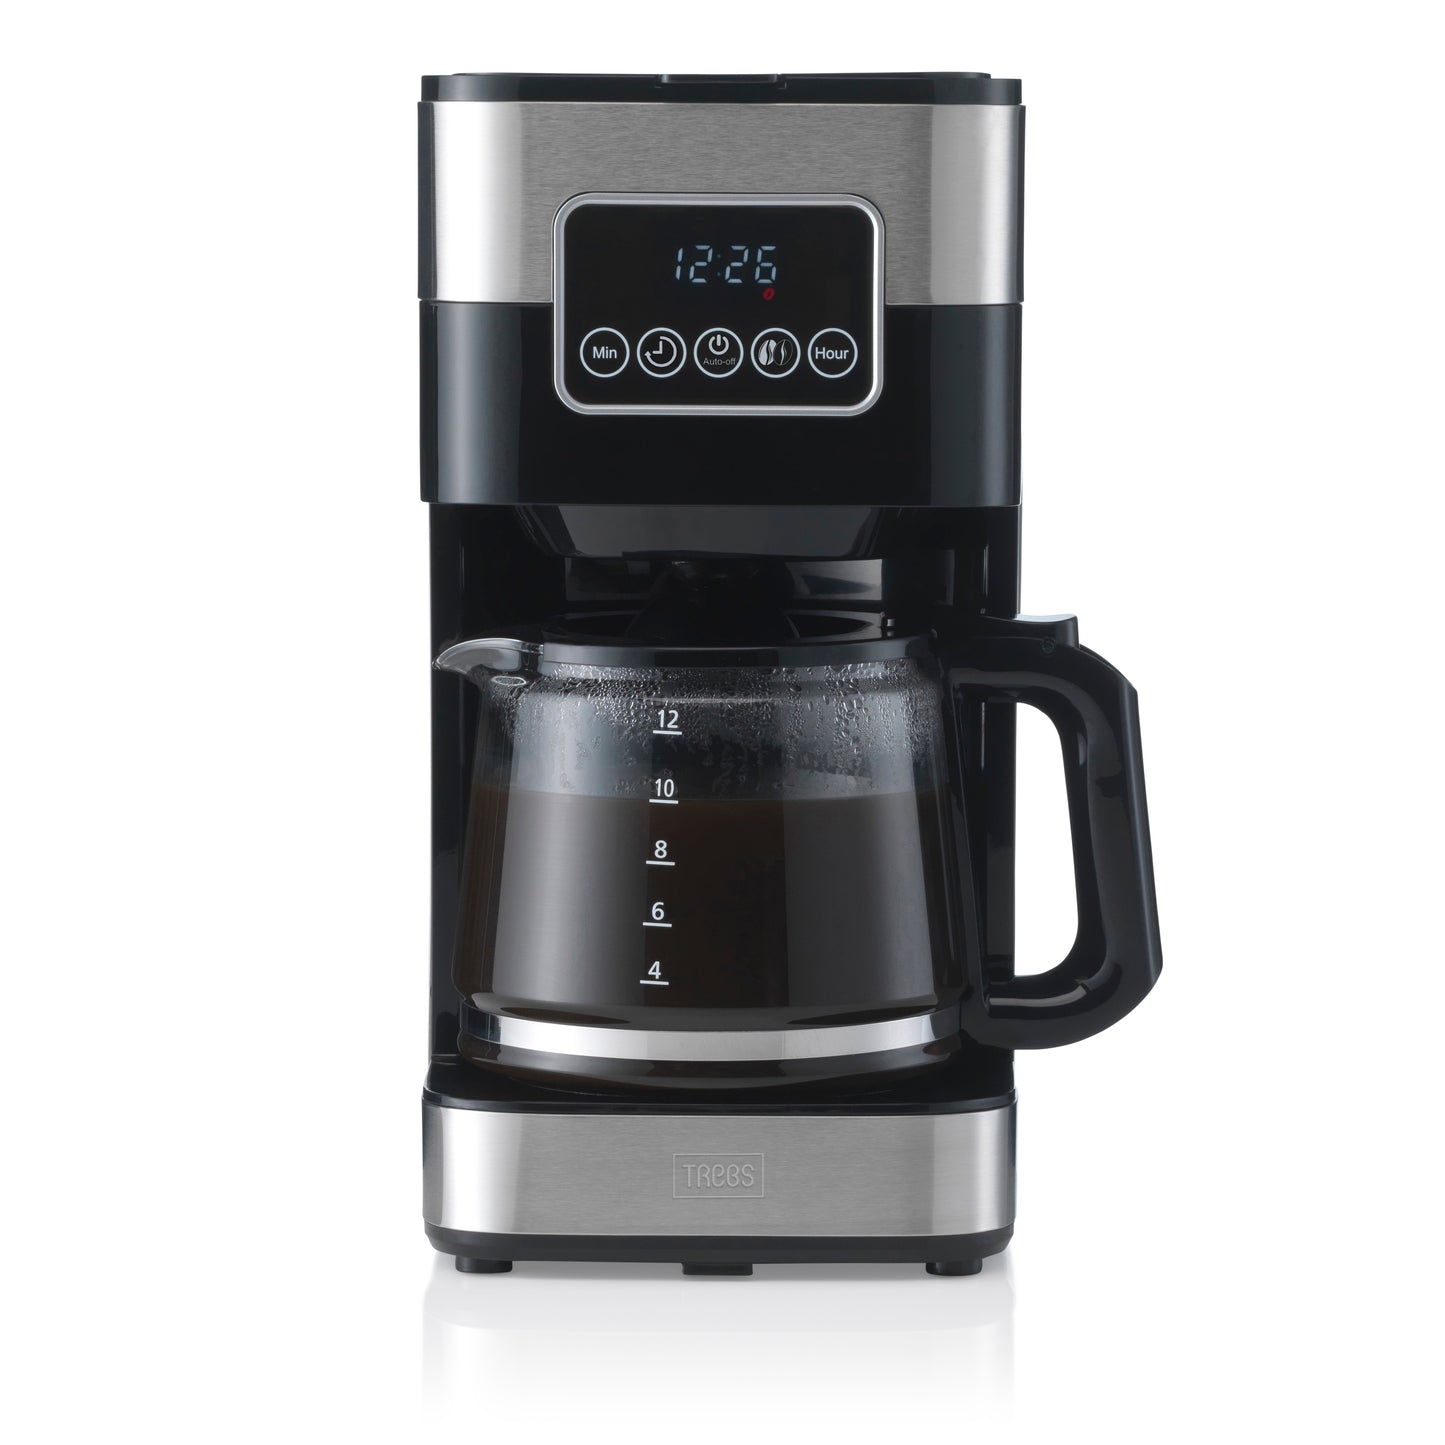 Trebs 24100 - Machine à café á filtre - 1,5L - Acier inoxydable